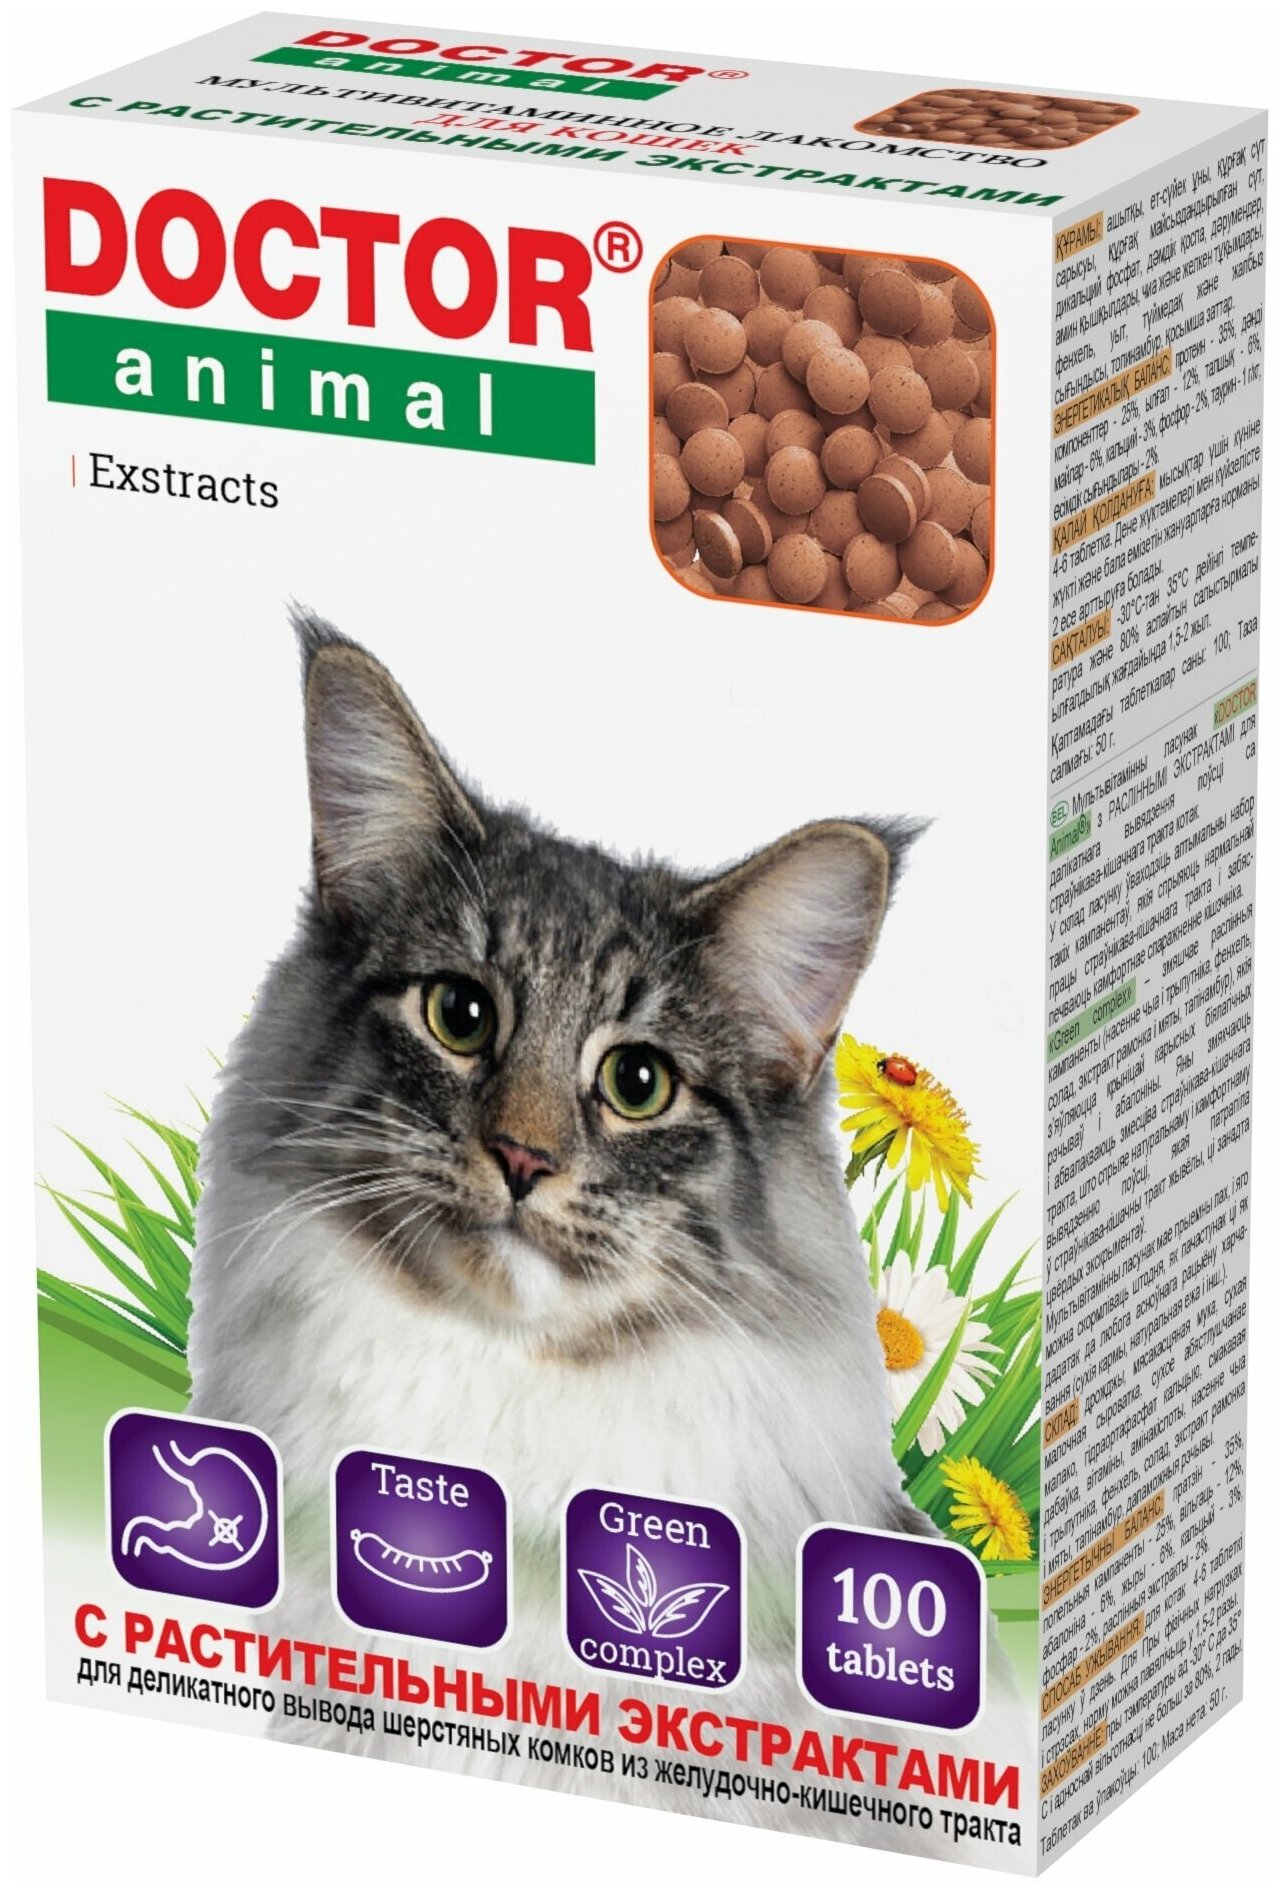 Мультивитаминное лакомство Doctor Animal с растительными экстрактами, для кошек, 100 таблеток